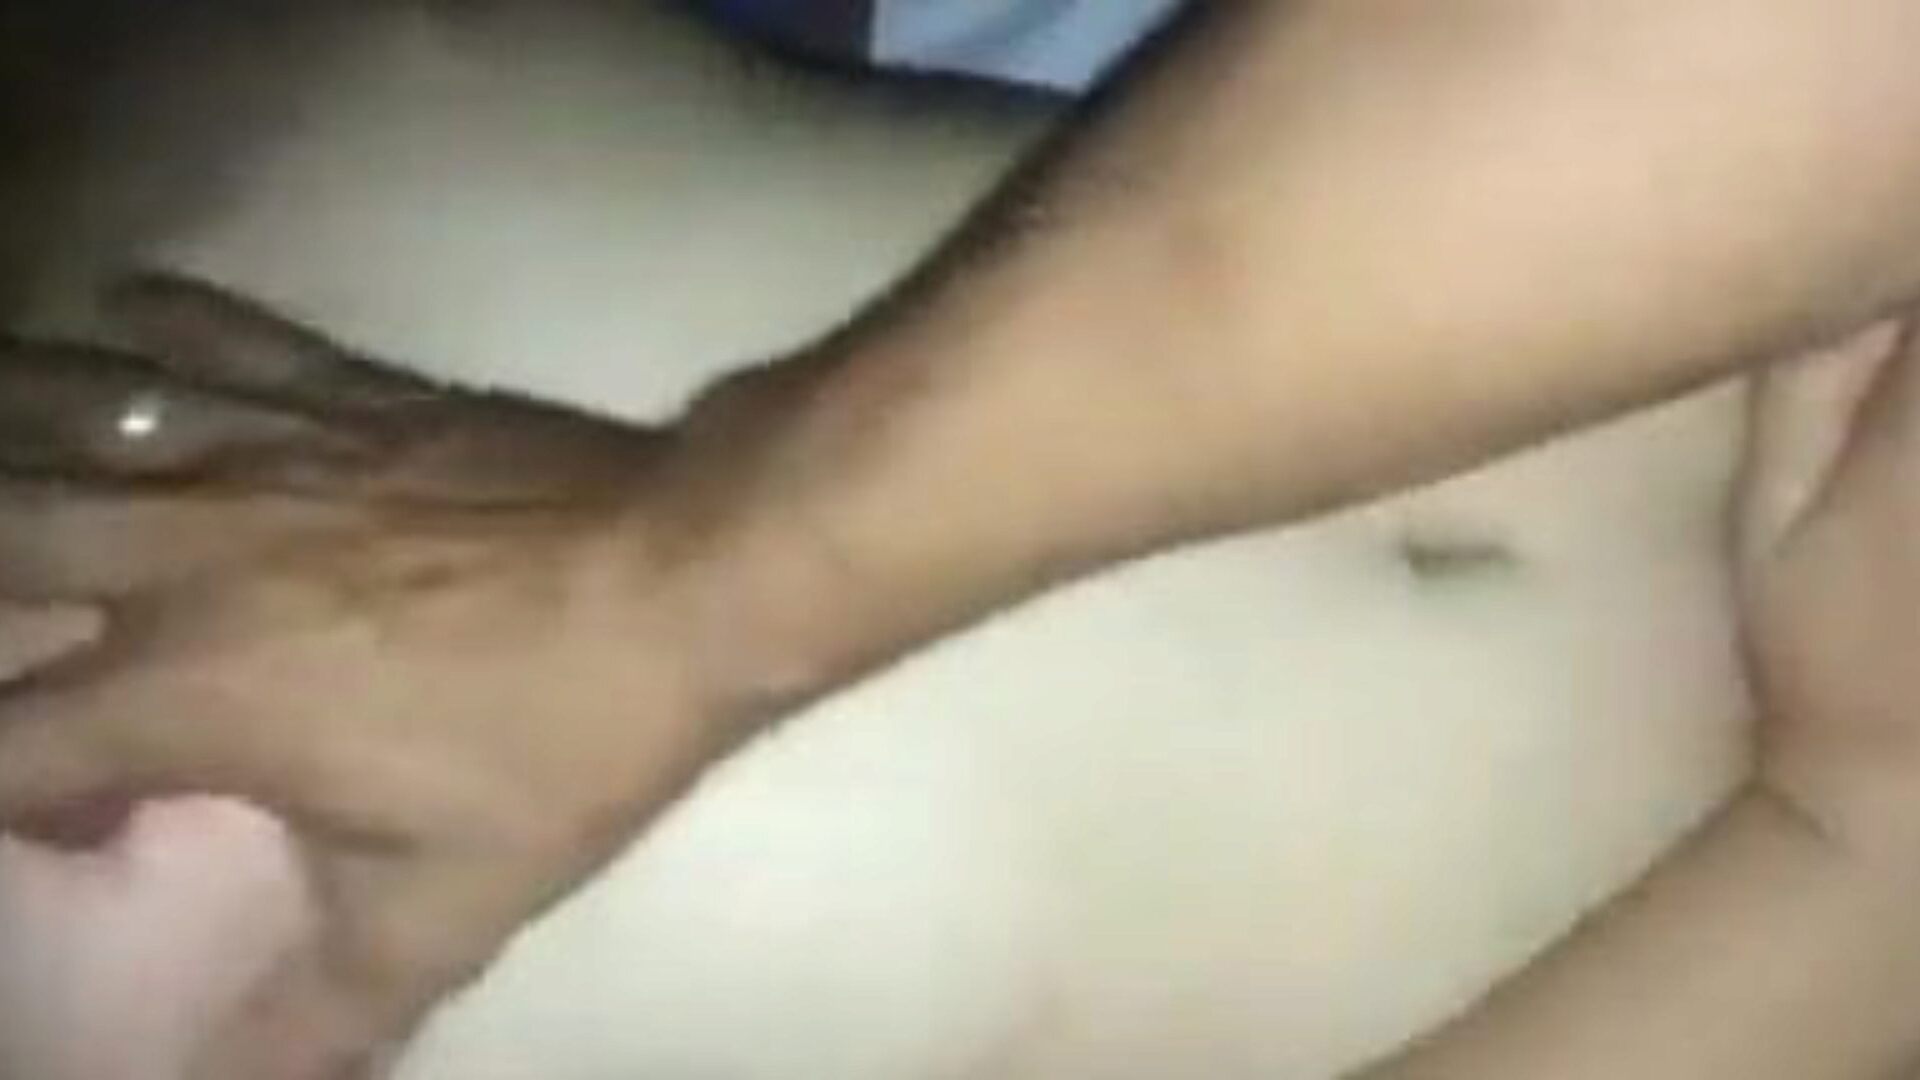 ksubtwba: manipuri grátis e vídeo pornô caseiro 93 - xhamster assistir clipe de sexo de tubo ksubtwba de graça no xhamster, com a incrível coleção de vinhetas de vídeo pornô de manipuri, caseiro, vagabunda e vadia nua